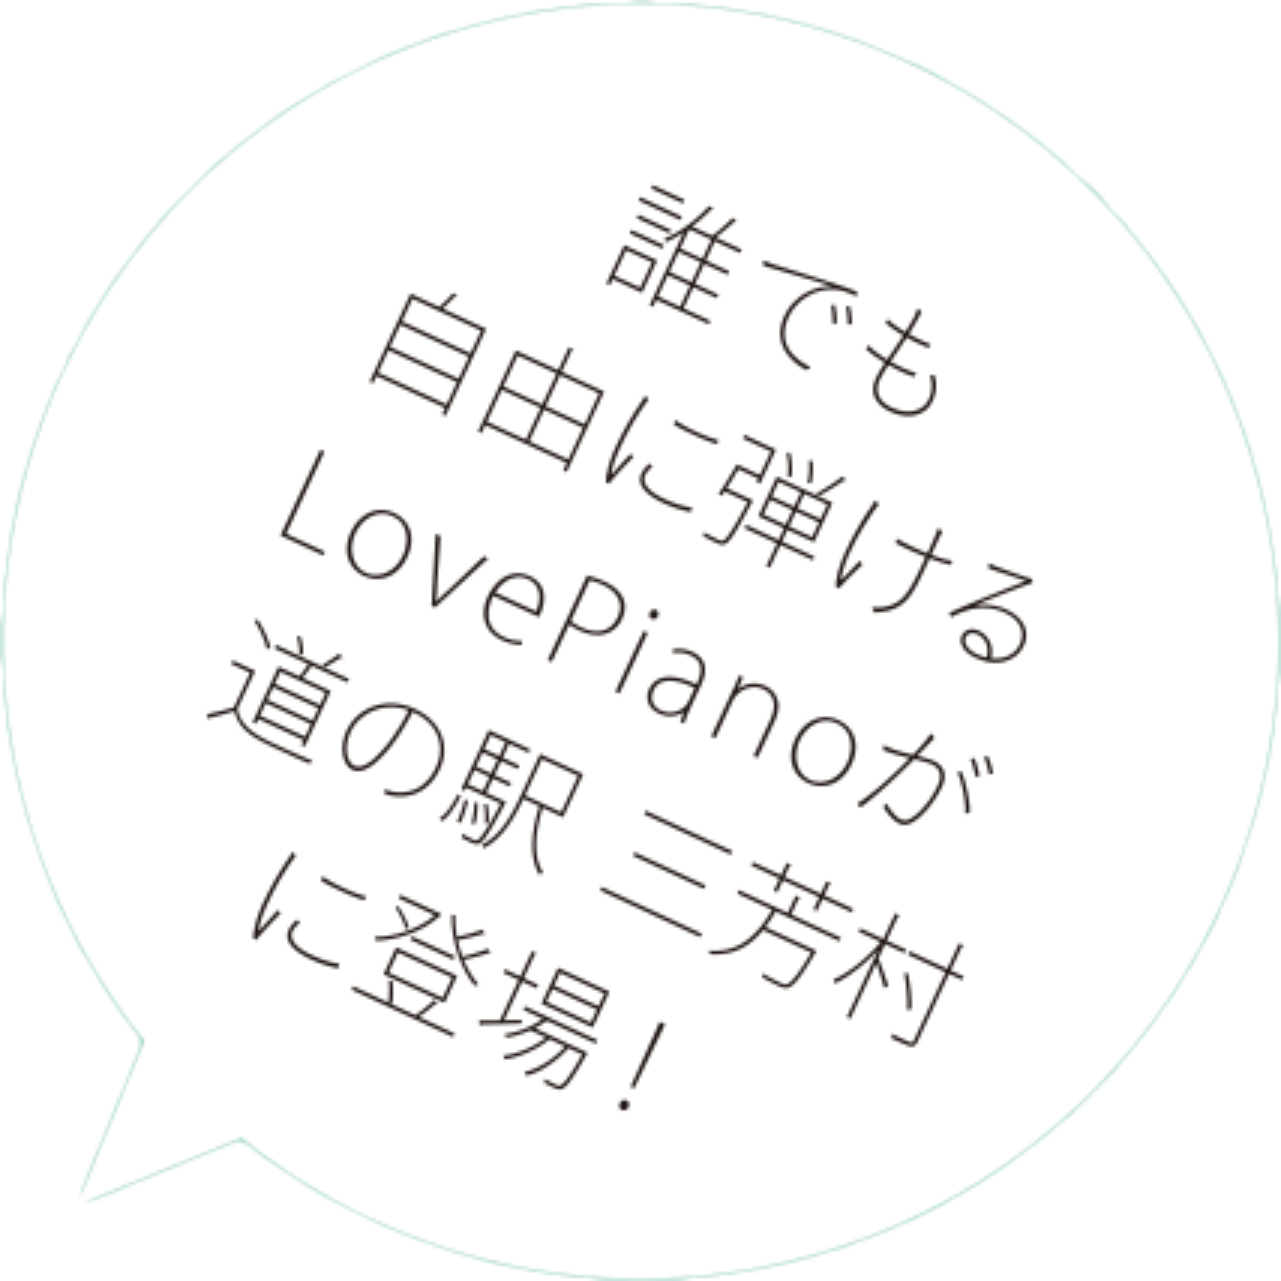 誰でも自由に弾けるLovePianoが道の駅三芳村に登場!